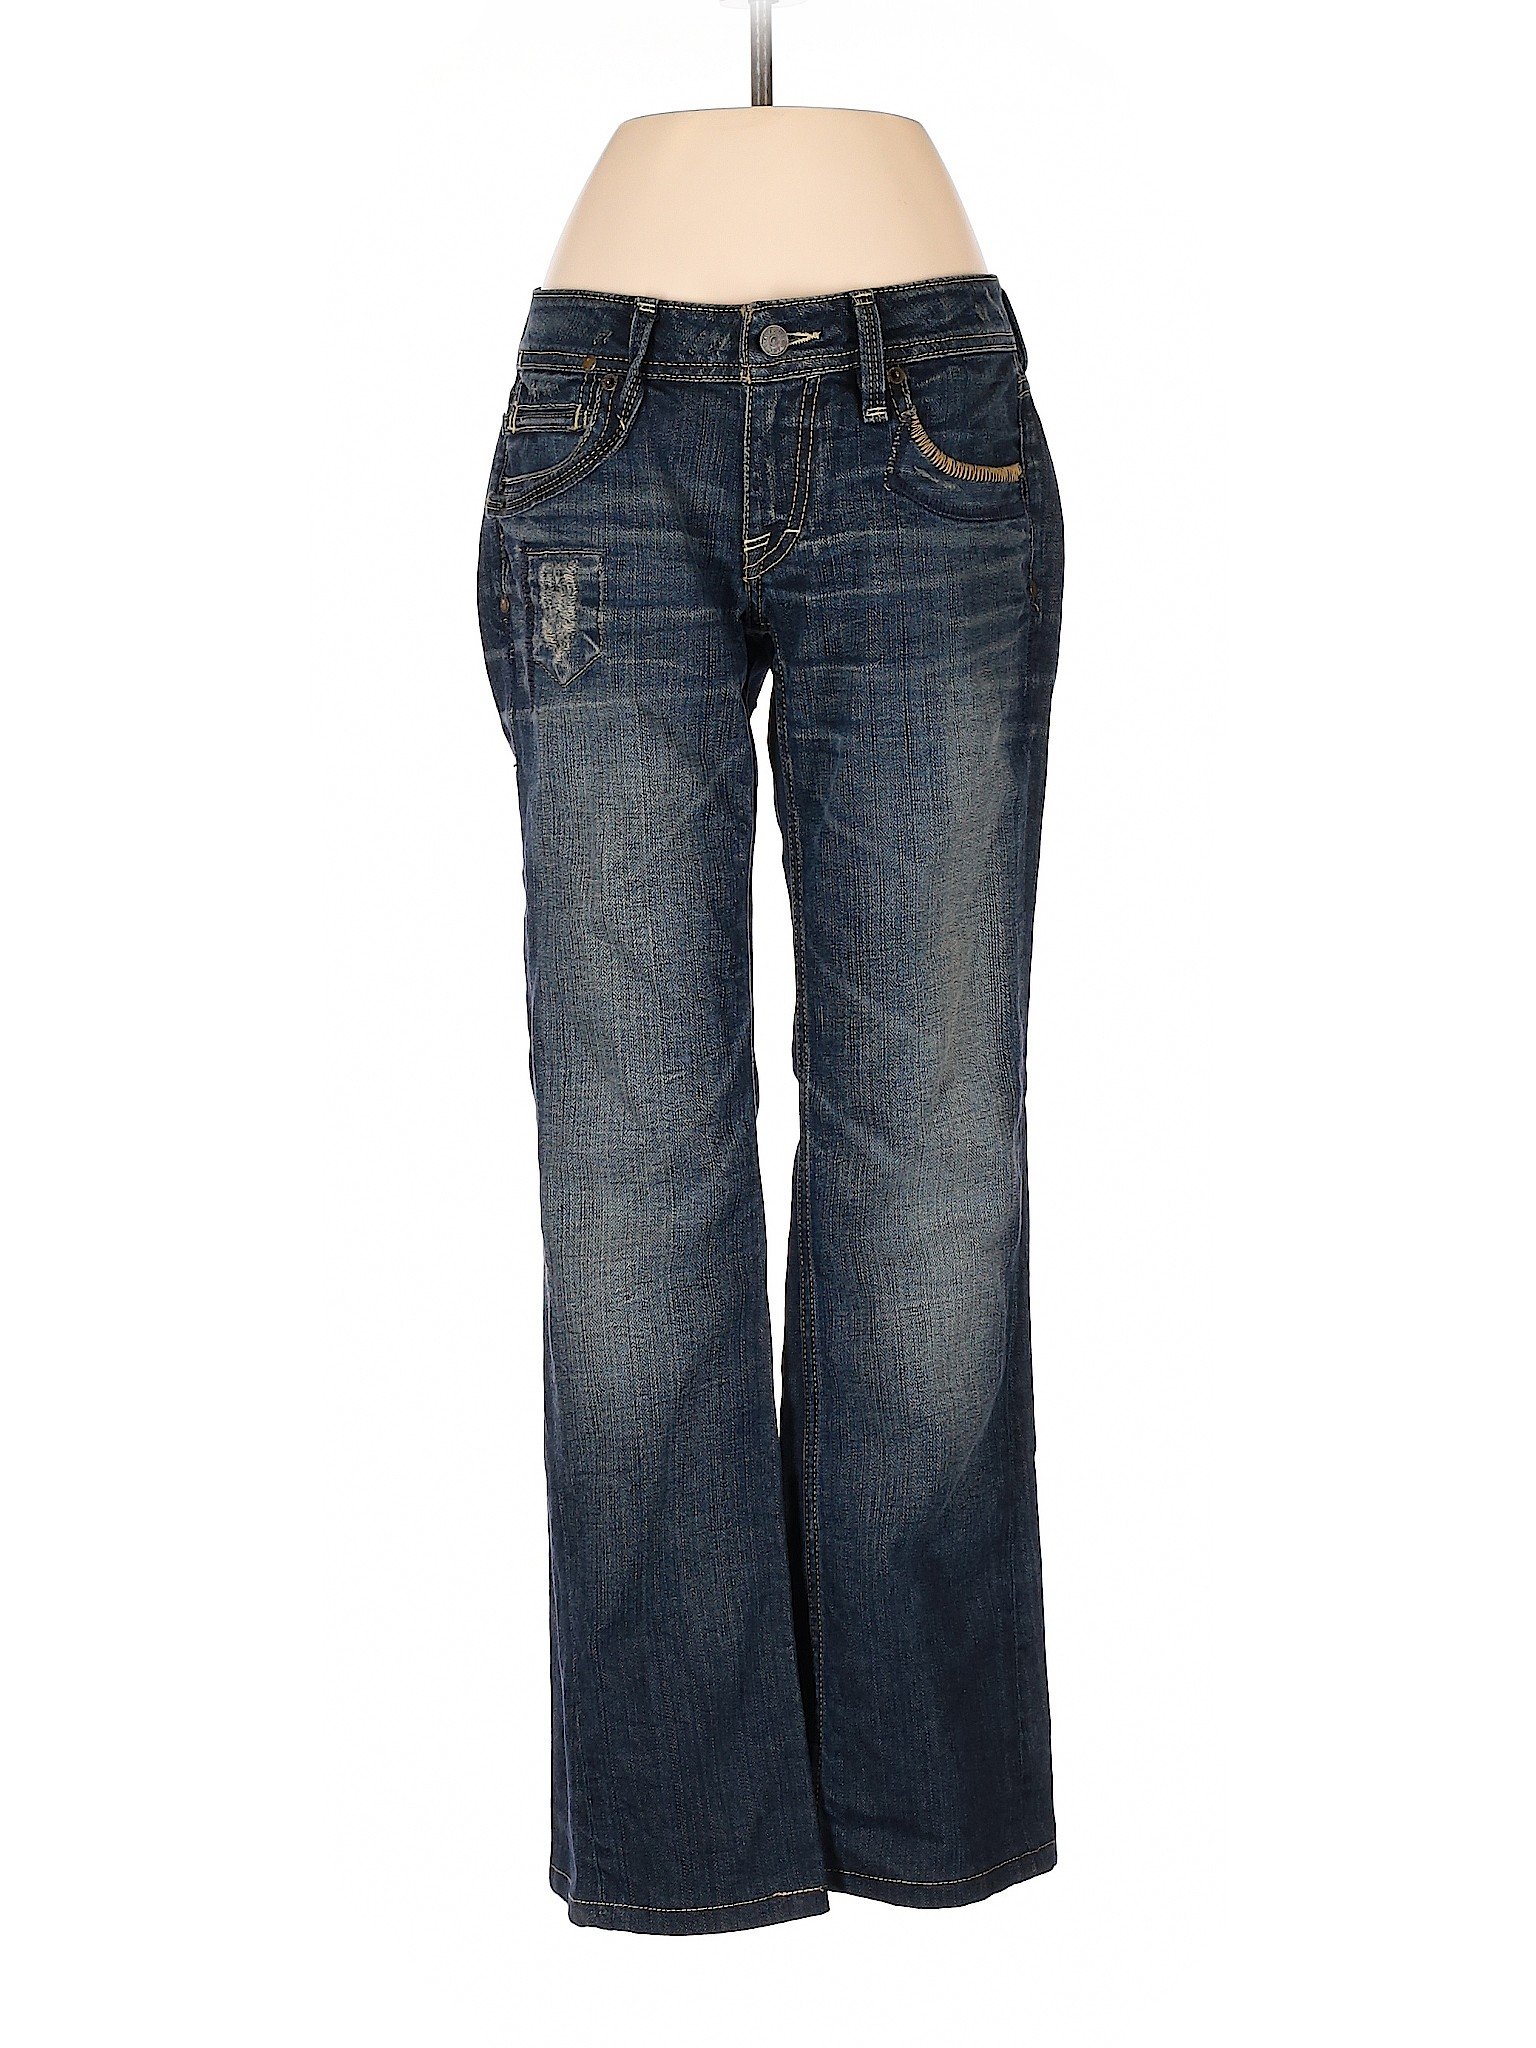 Taverniti So Jeans Women Blue Jeans 27W | eBay